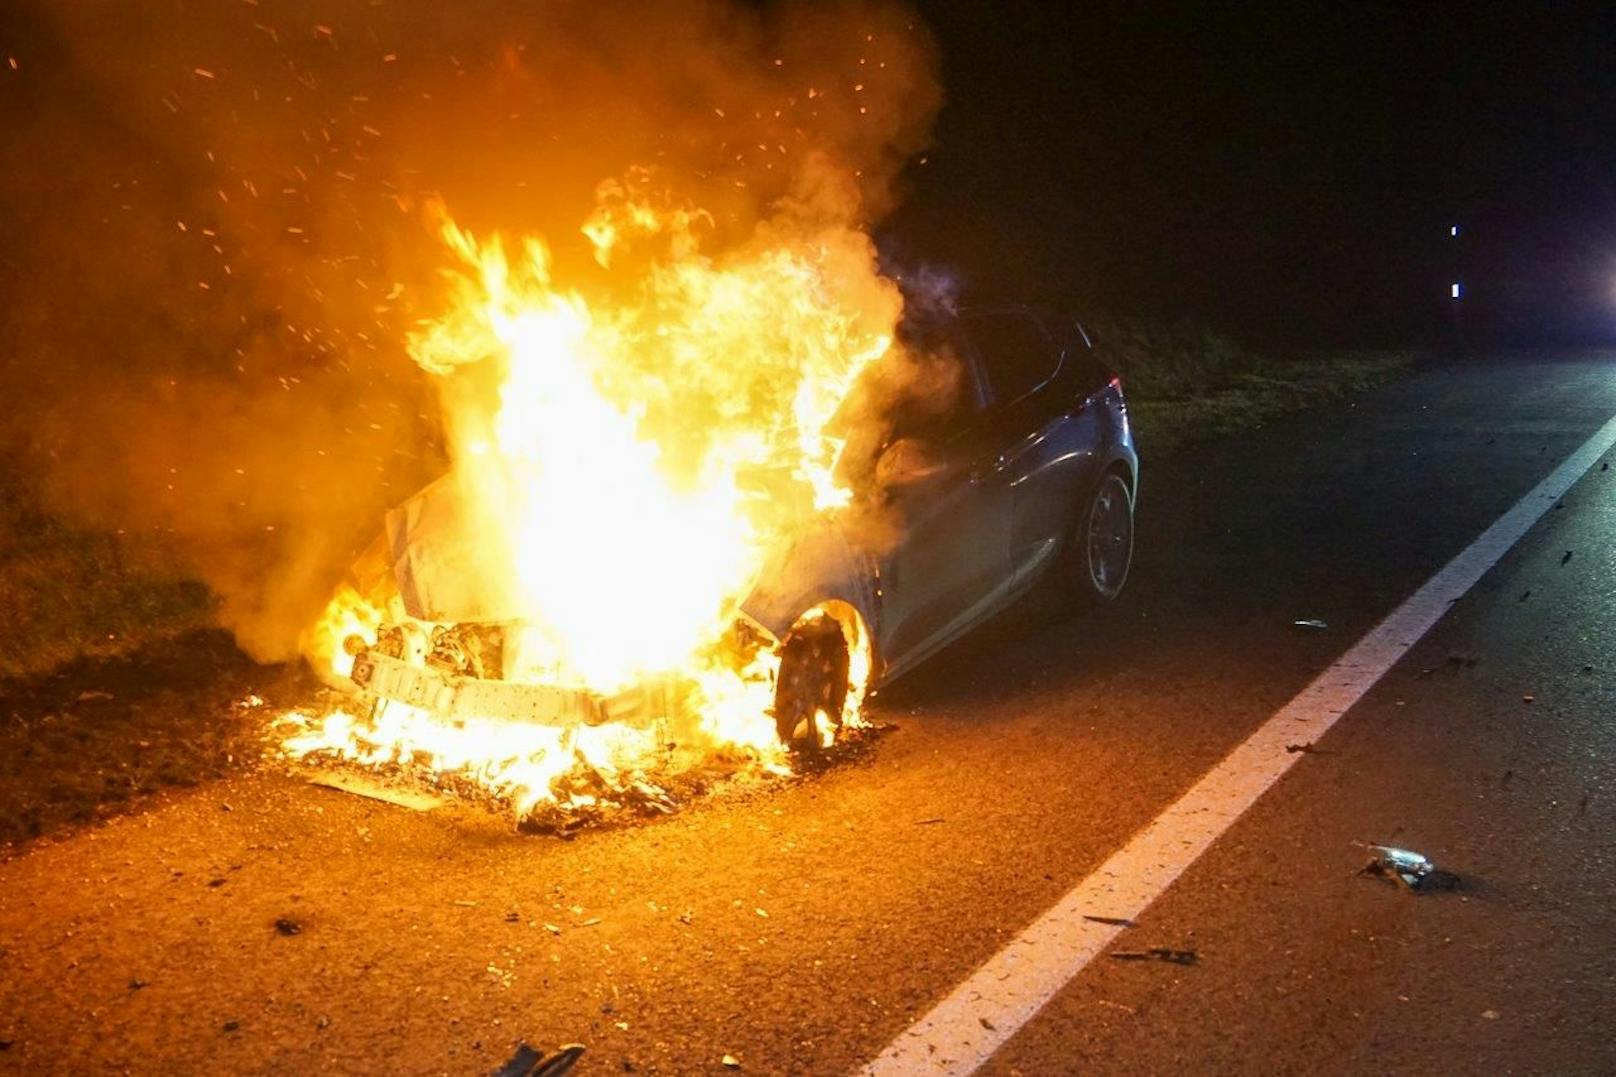 Der Wagen ging in Flammen auf.